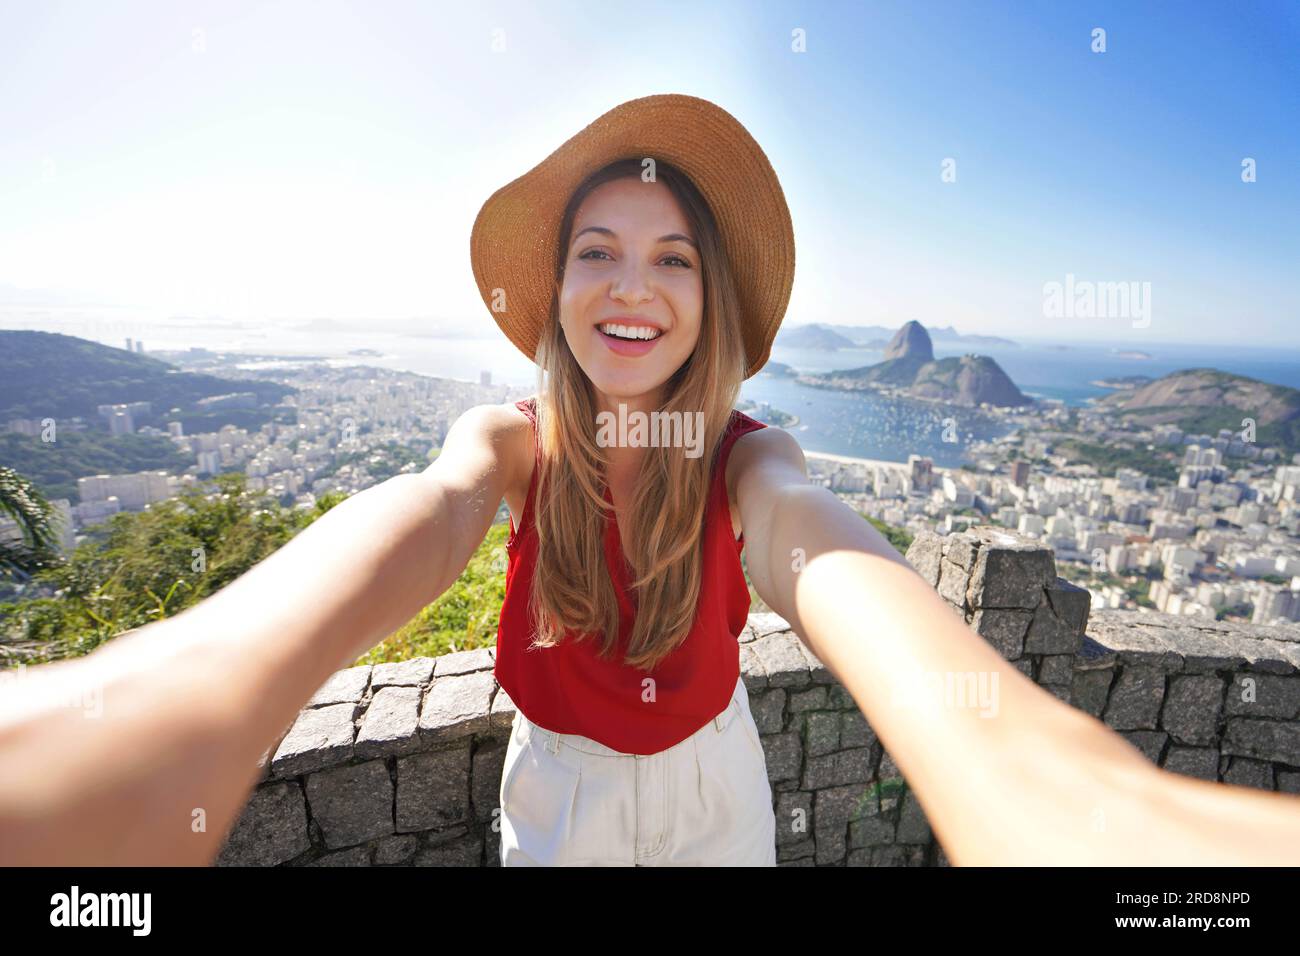 Selbstporträt eines Mädchens mit der berühmten Guanabara-Bucht und dem Zuckerhut in Rio de Janeiro, UNESCO-Weltkulturerbe, Brasilien Stockfoto